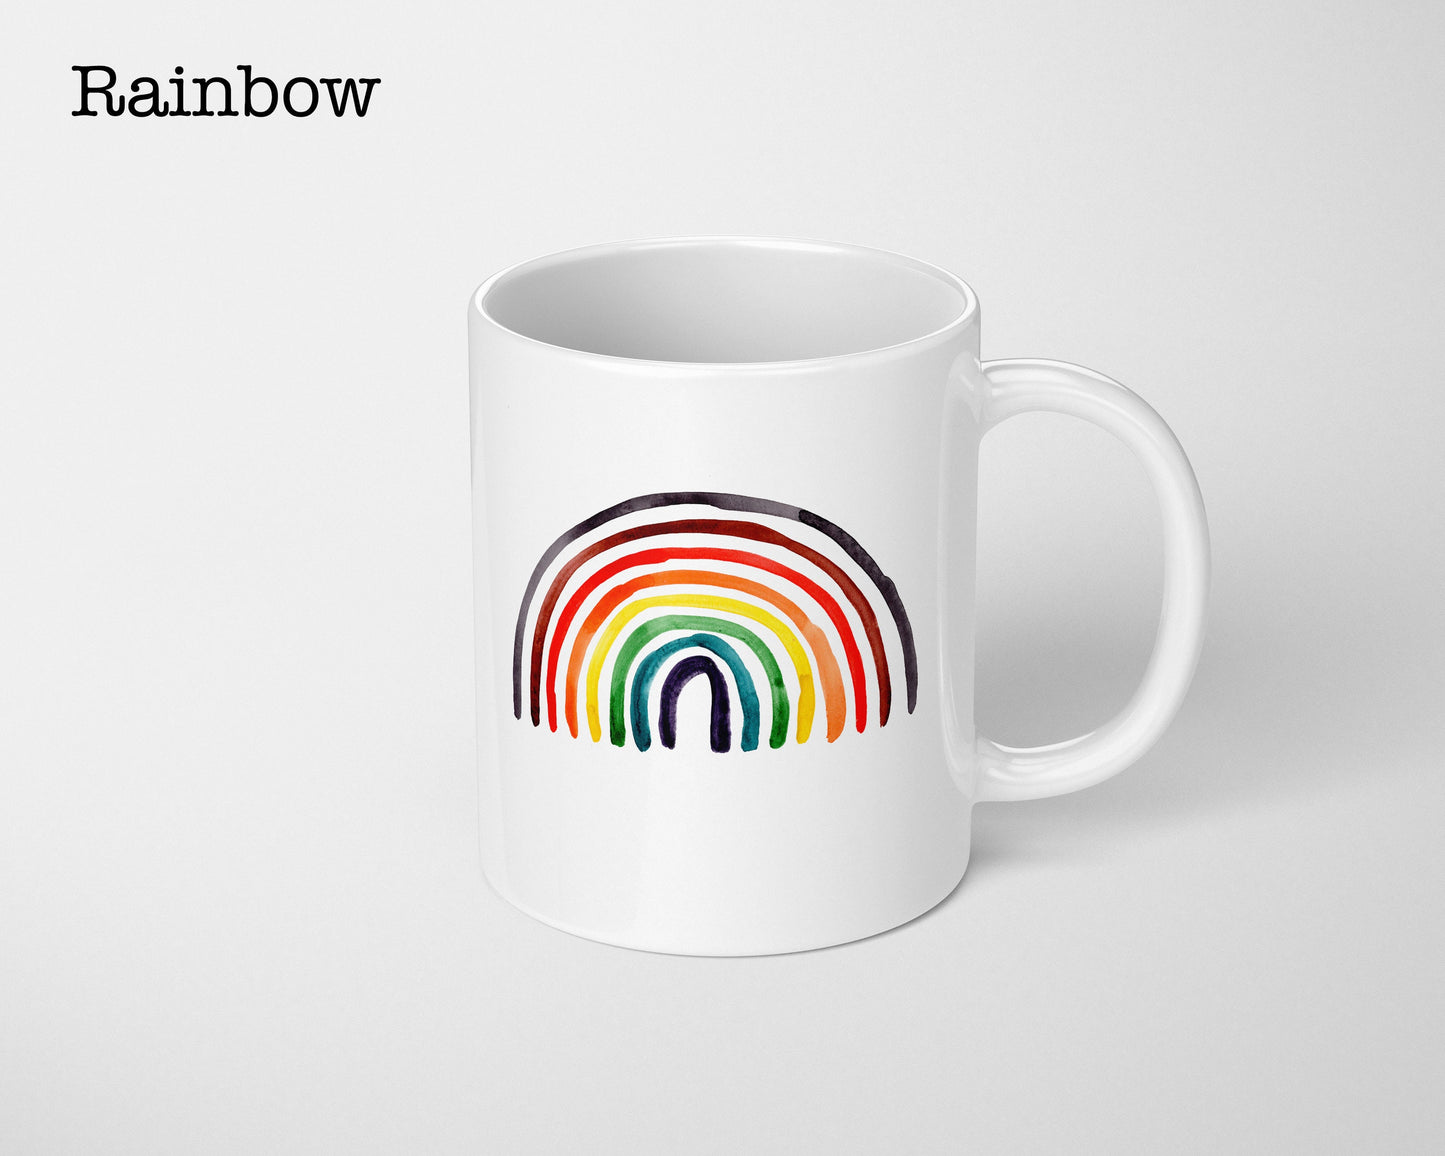 LGBTQ Pride  Coffee Mug